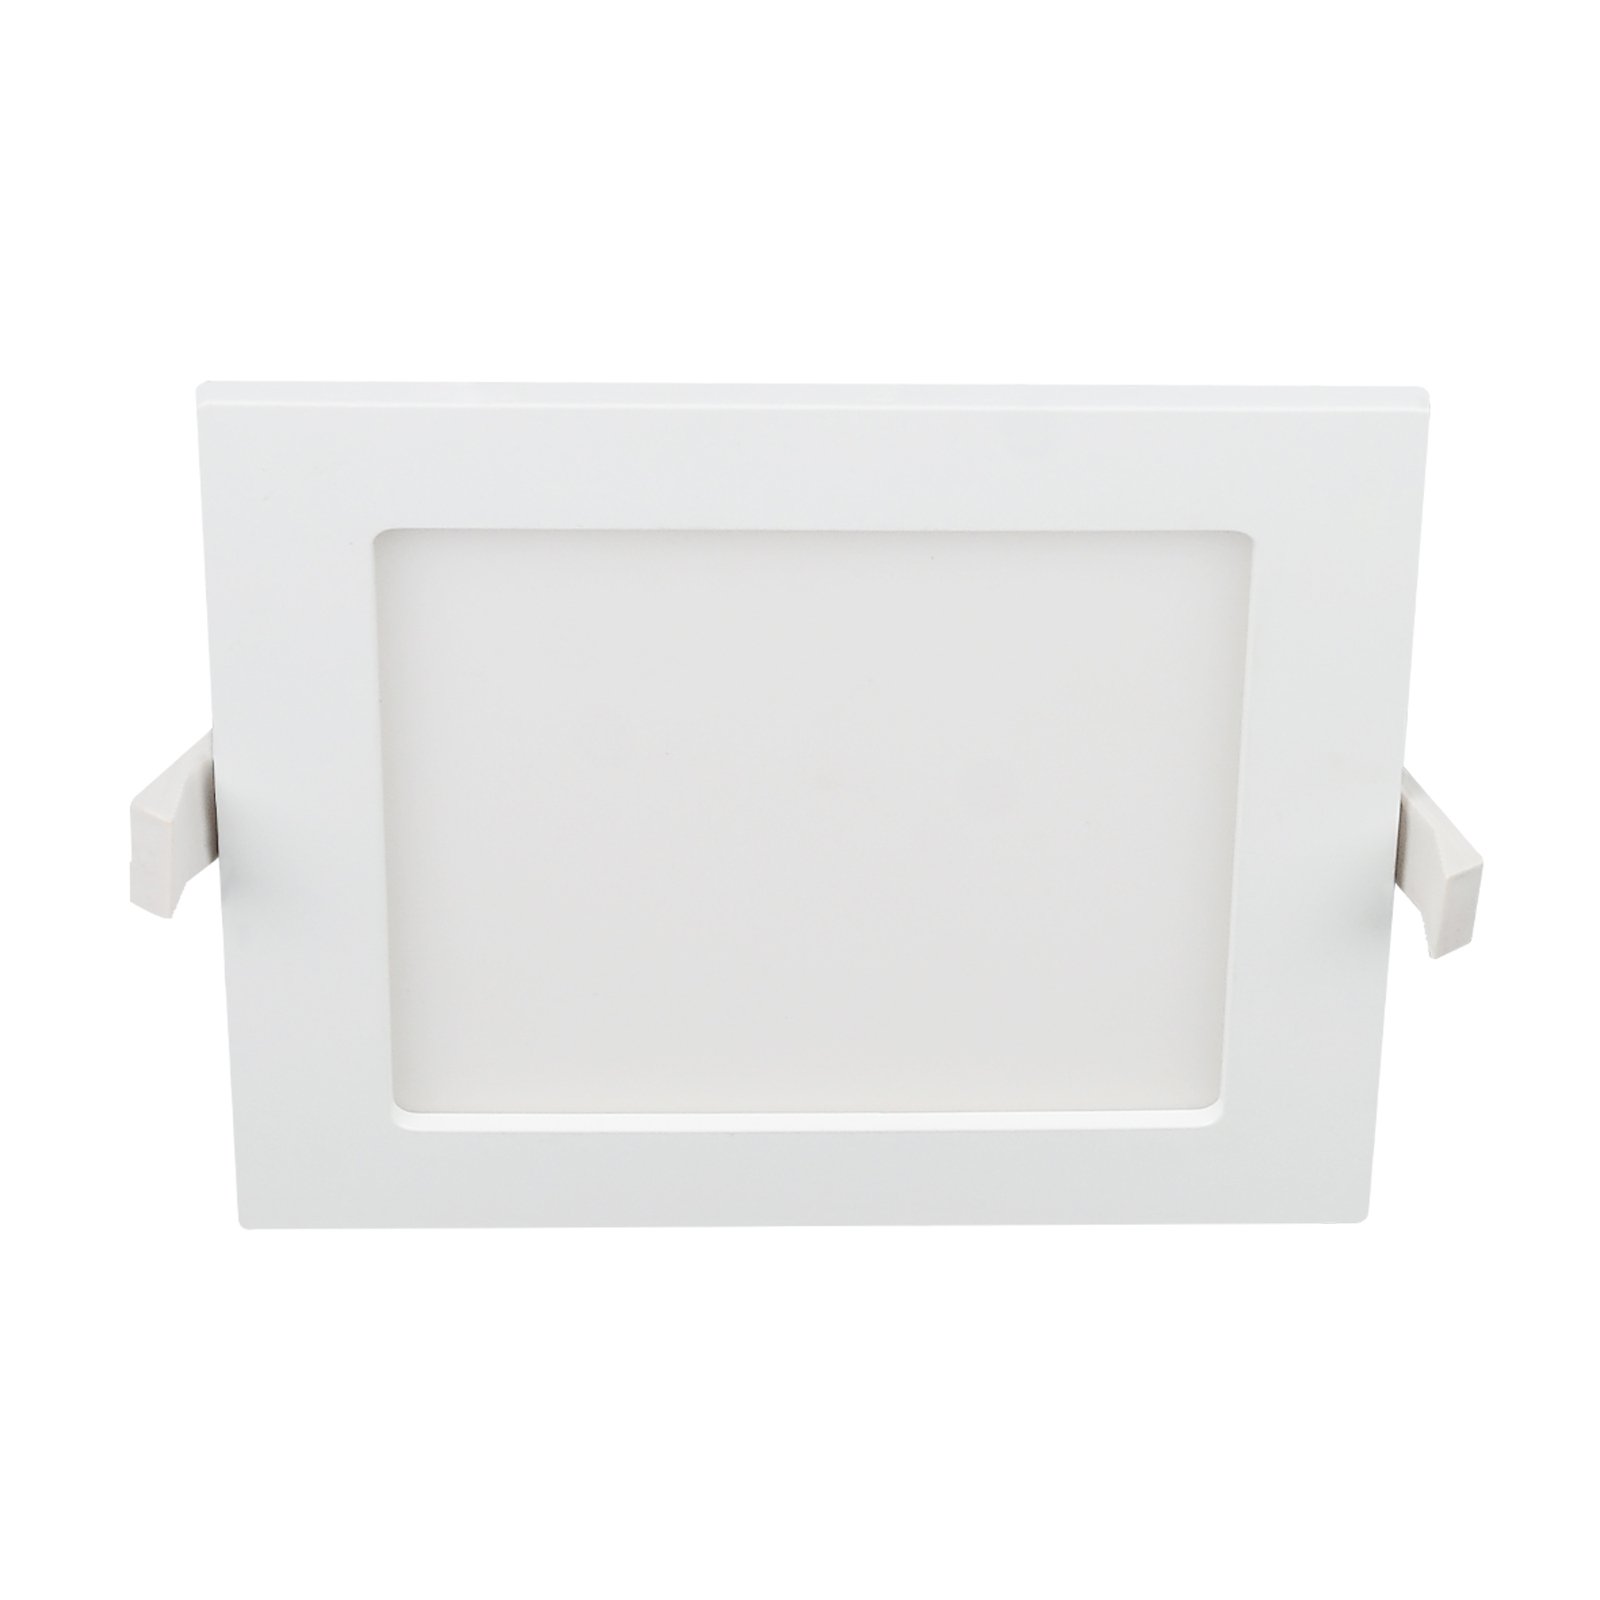 Prios Helina -LED-uppovalo, valkoinen, 22 cm, 24 W